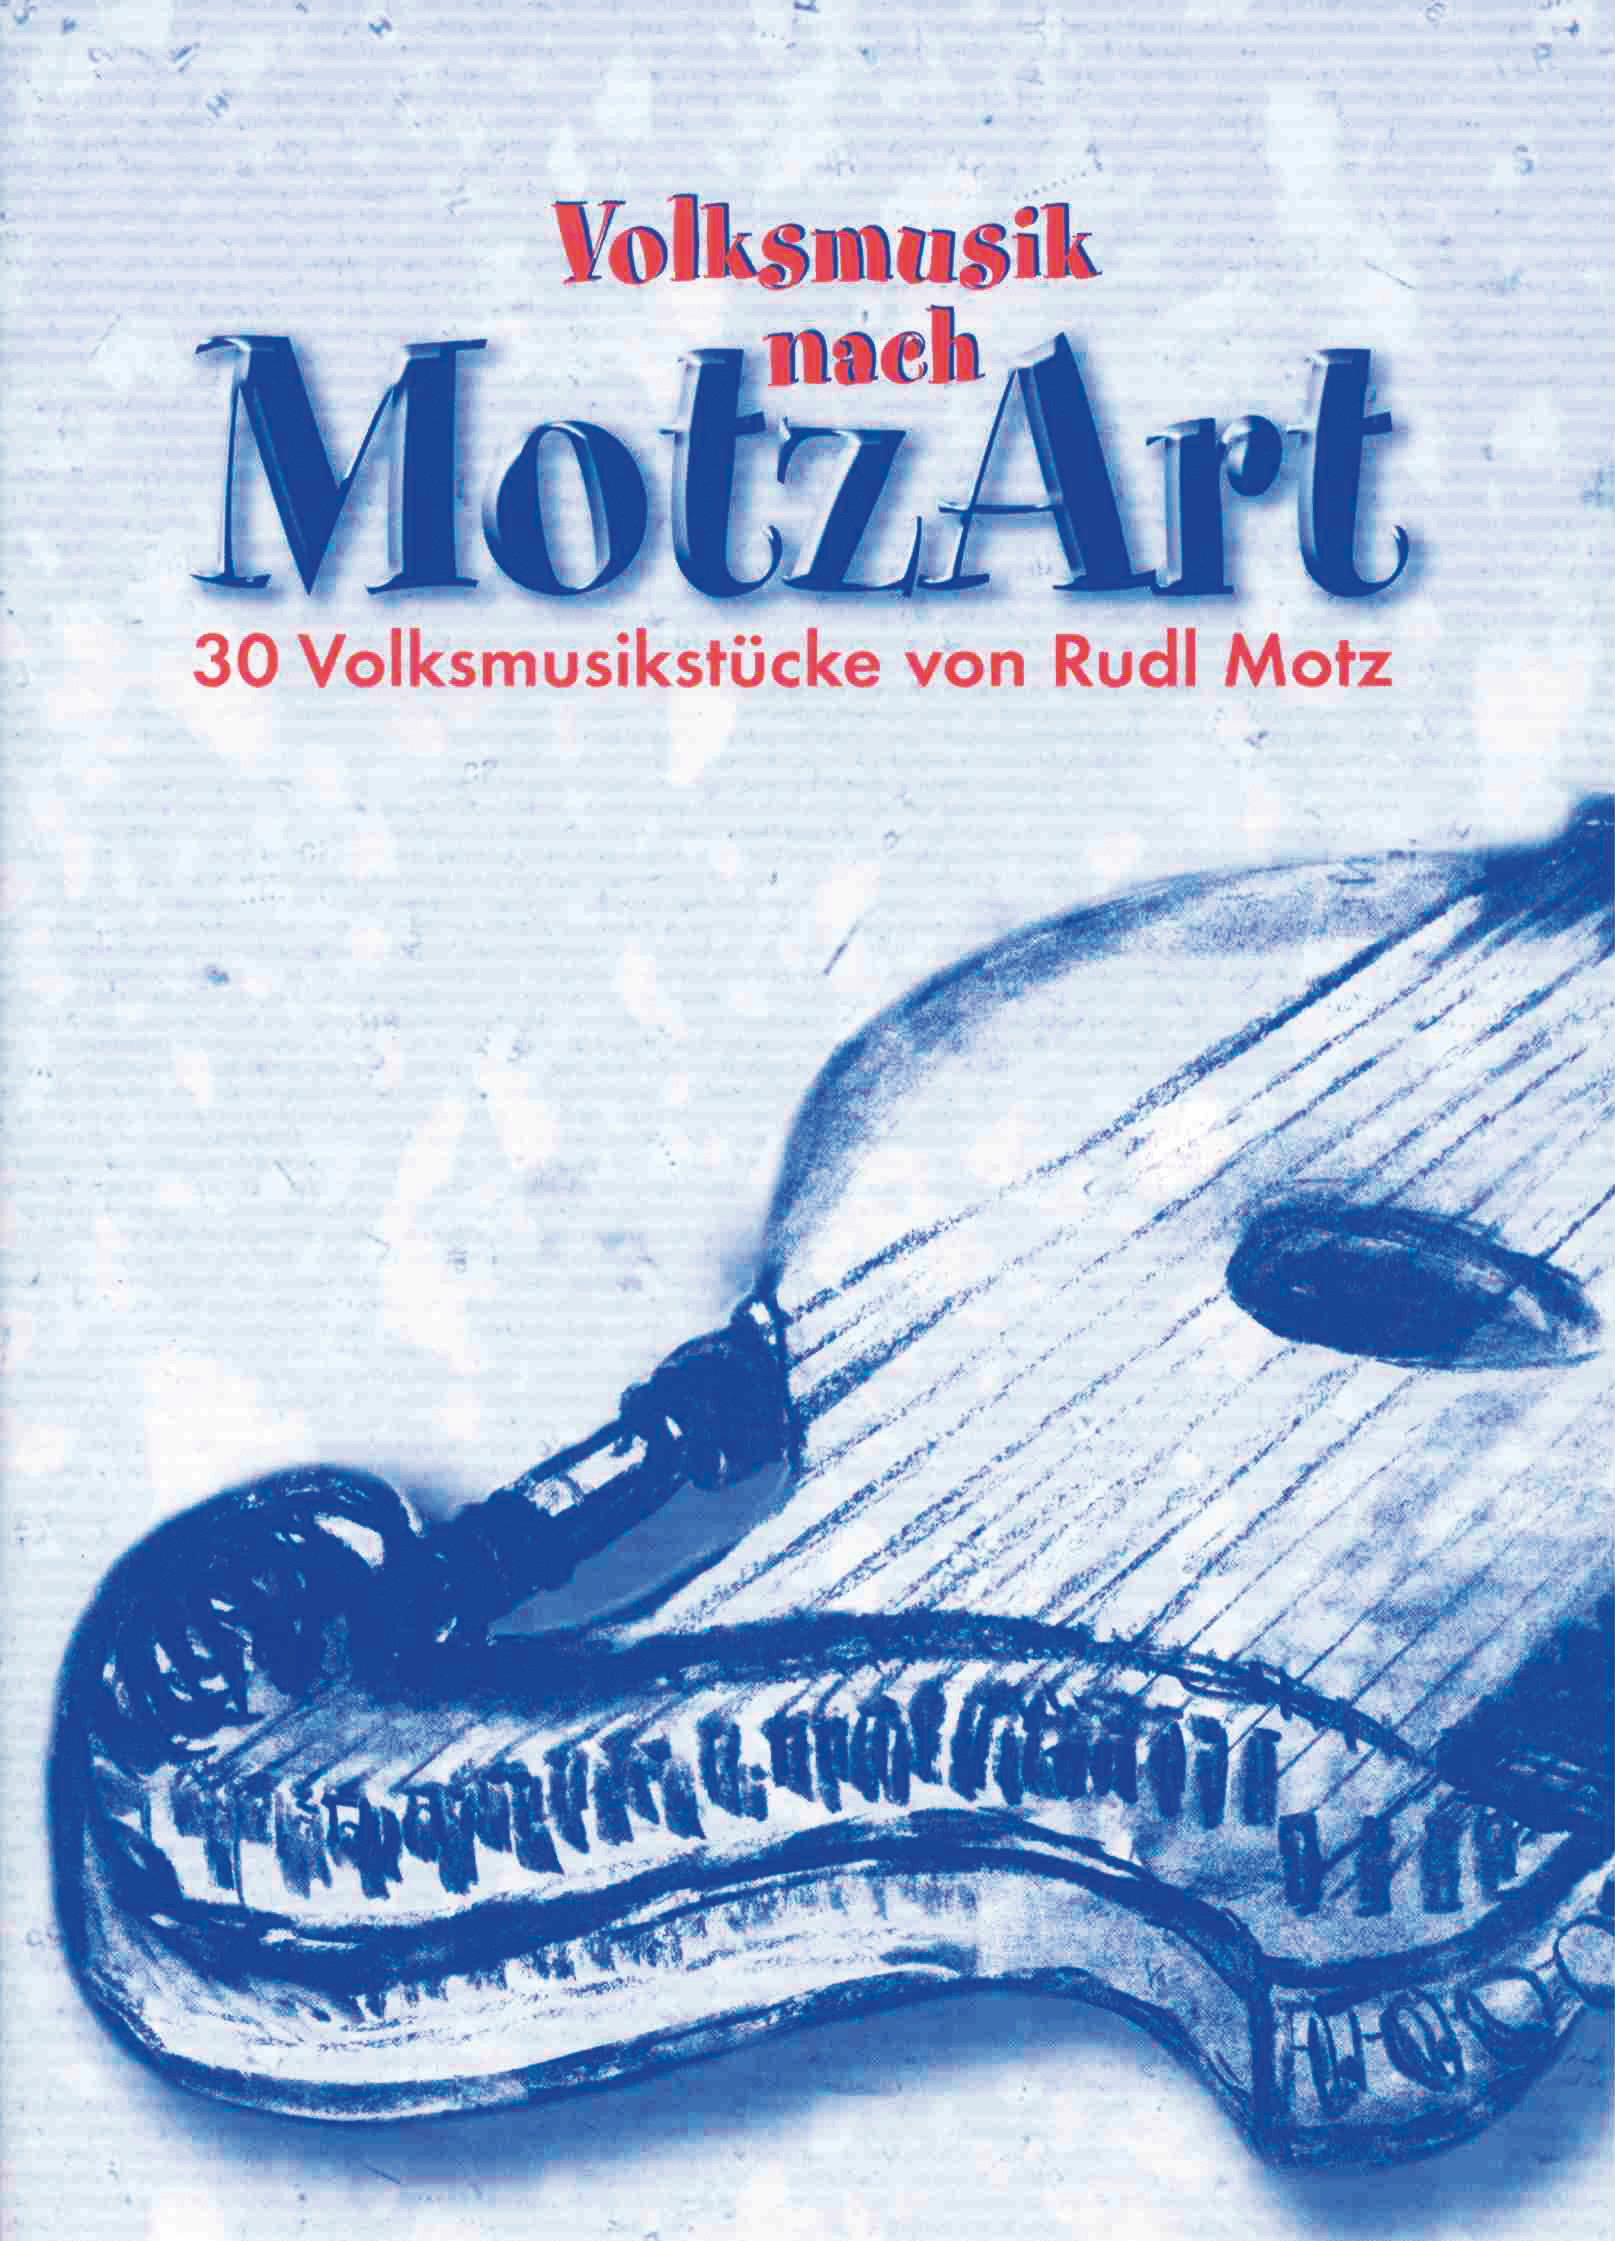 Volksmusik nach MotzArt: 30 Volksmusikstücke von Rudl Motz